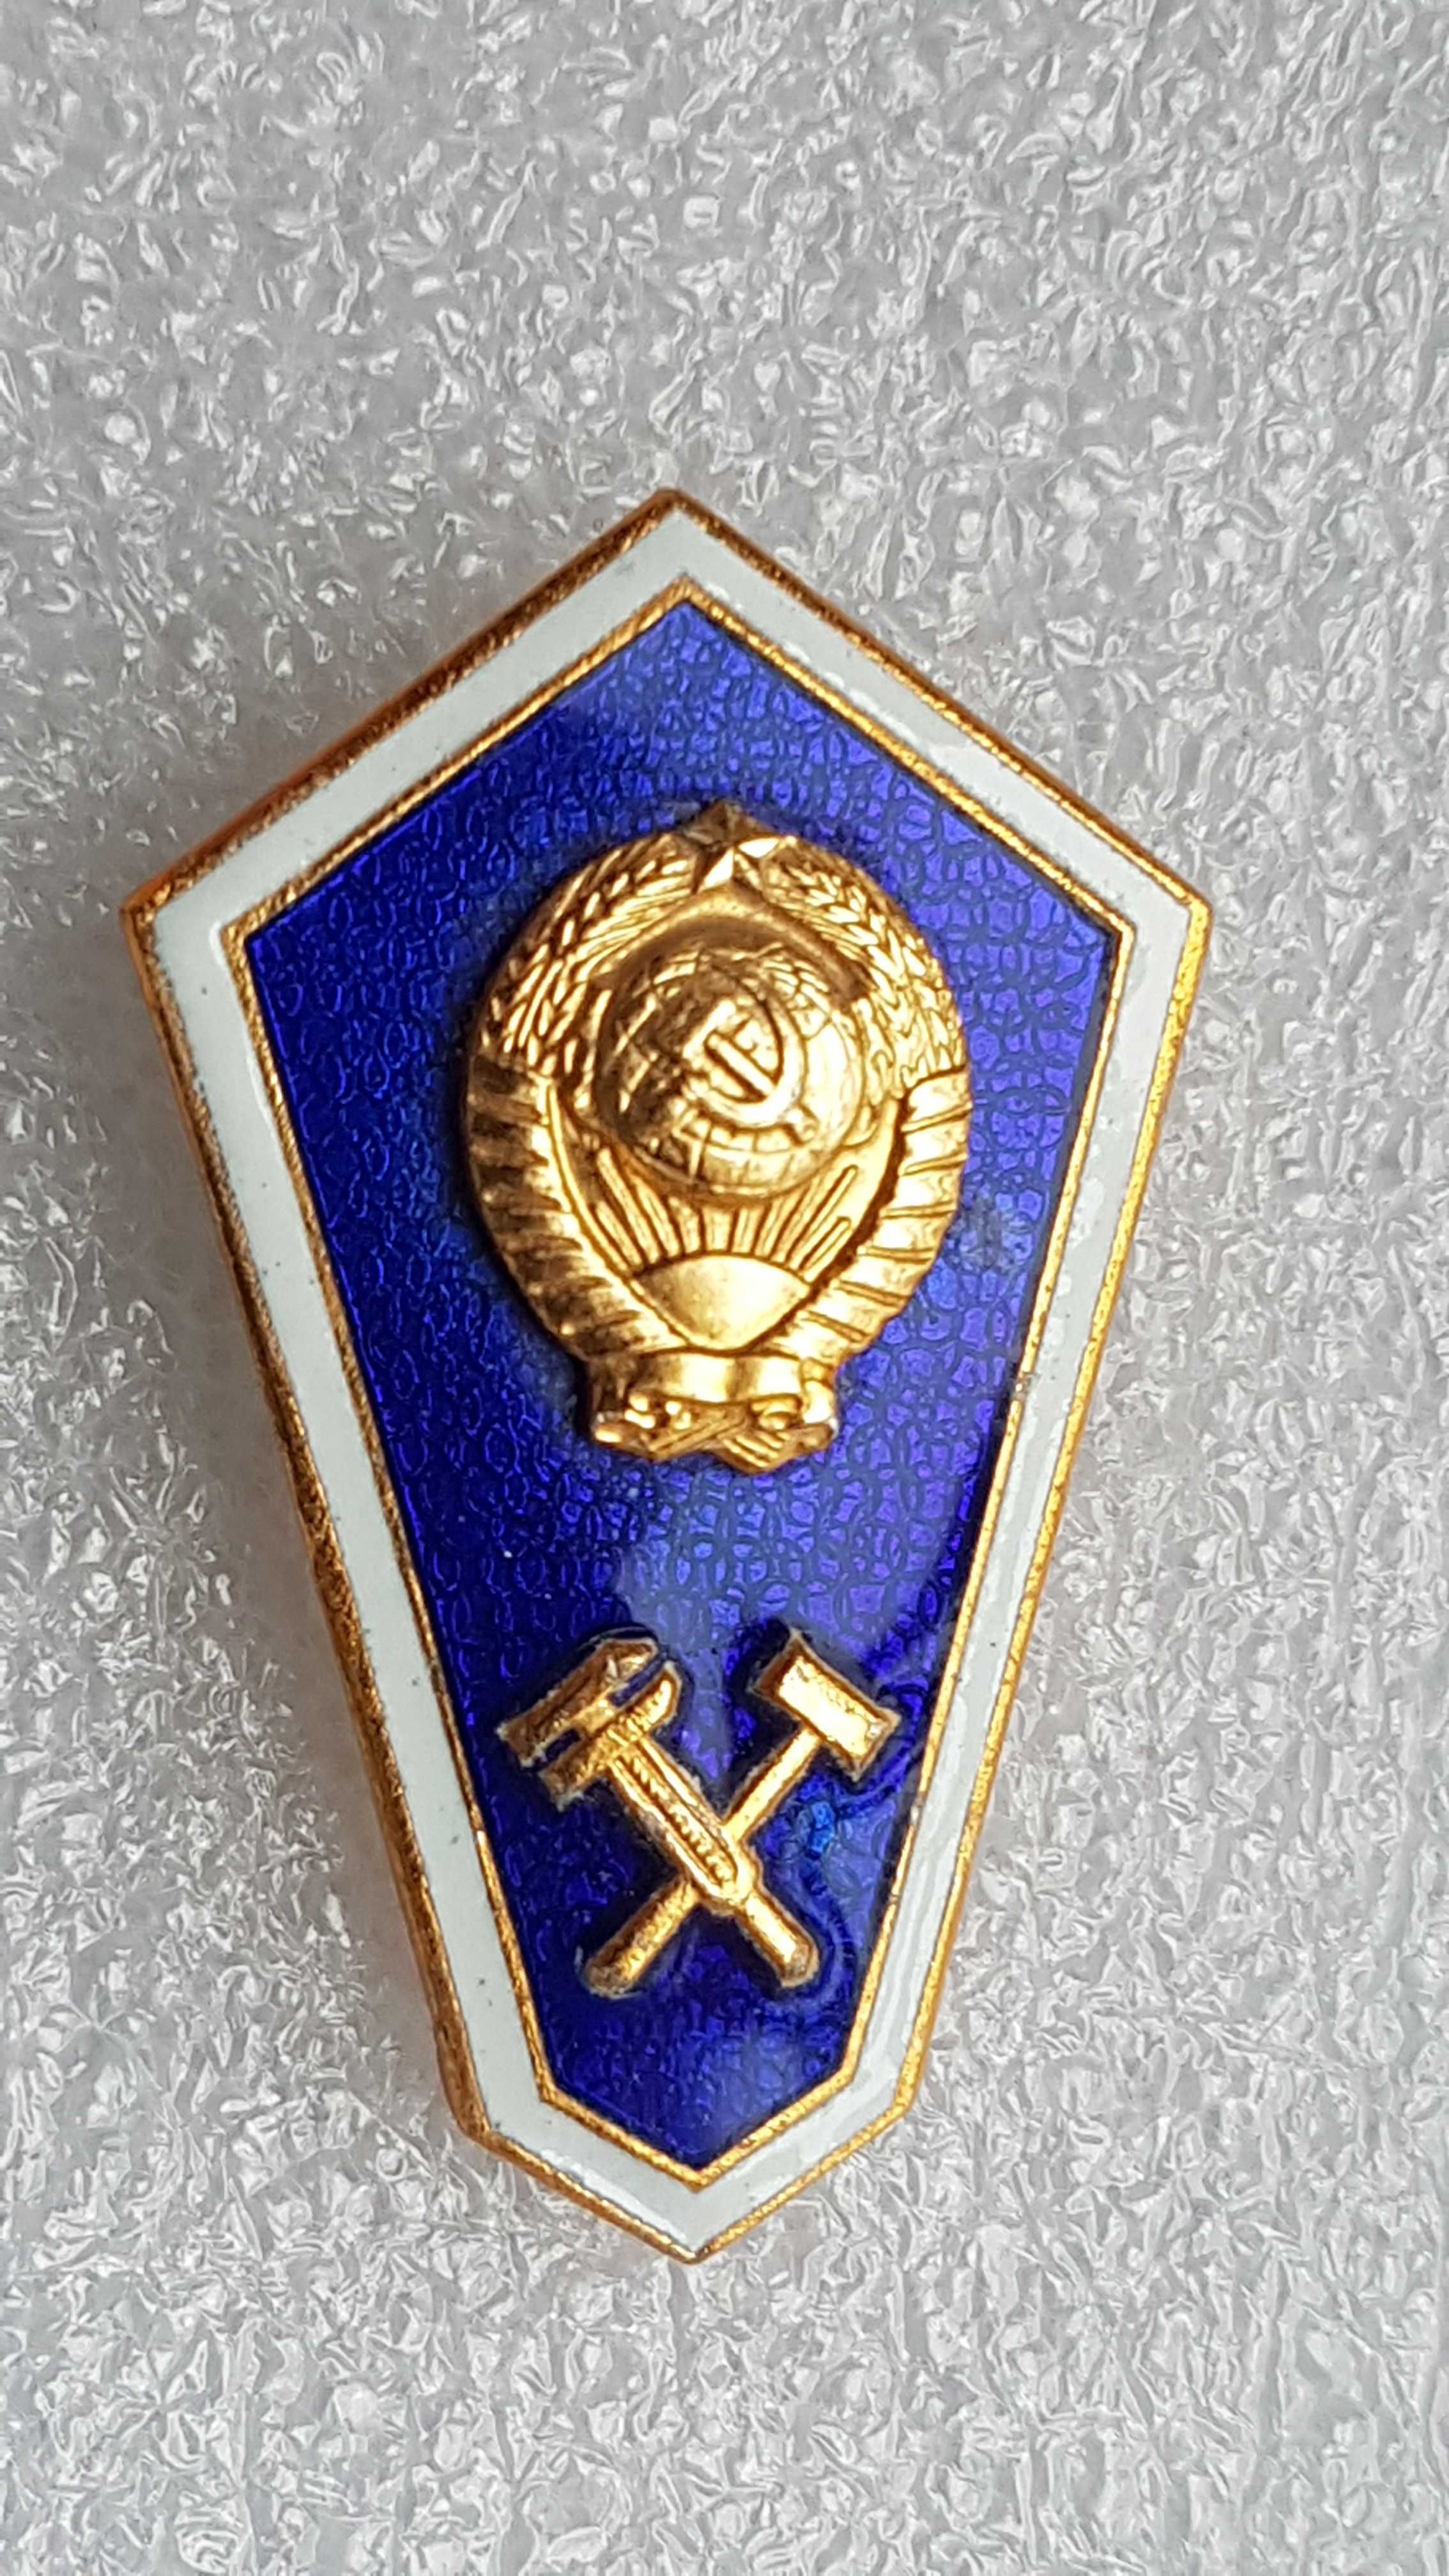 ZSRR-M.M.D odznaka absolwenta technikum mechanicznego-(College )